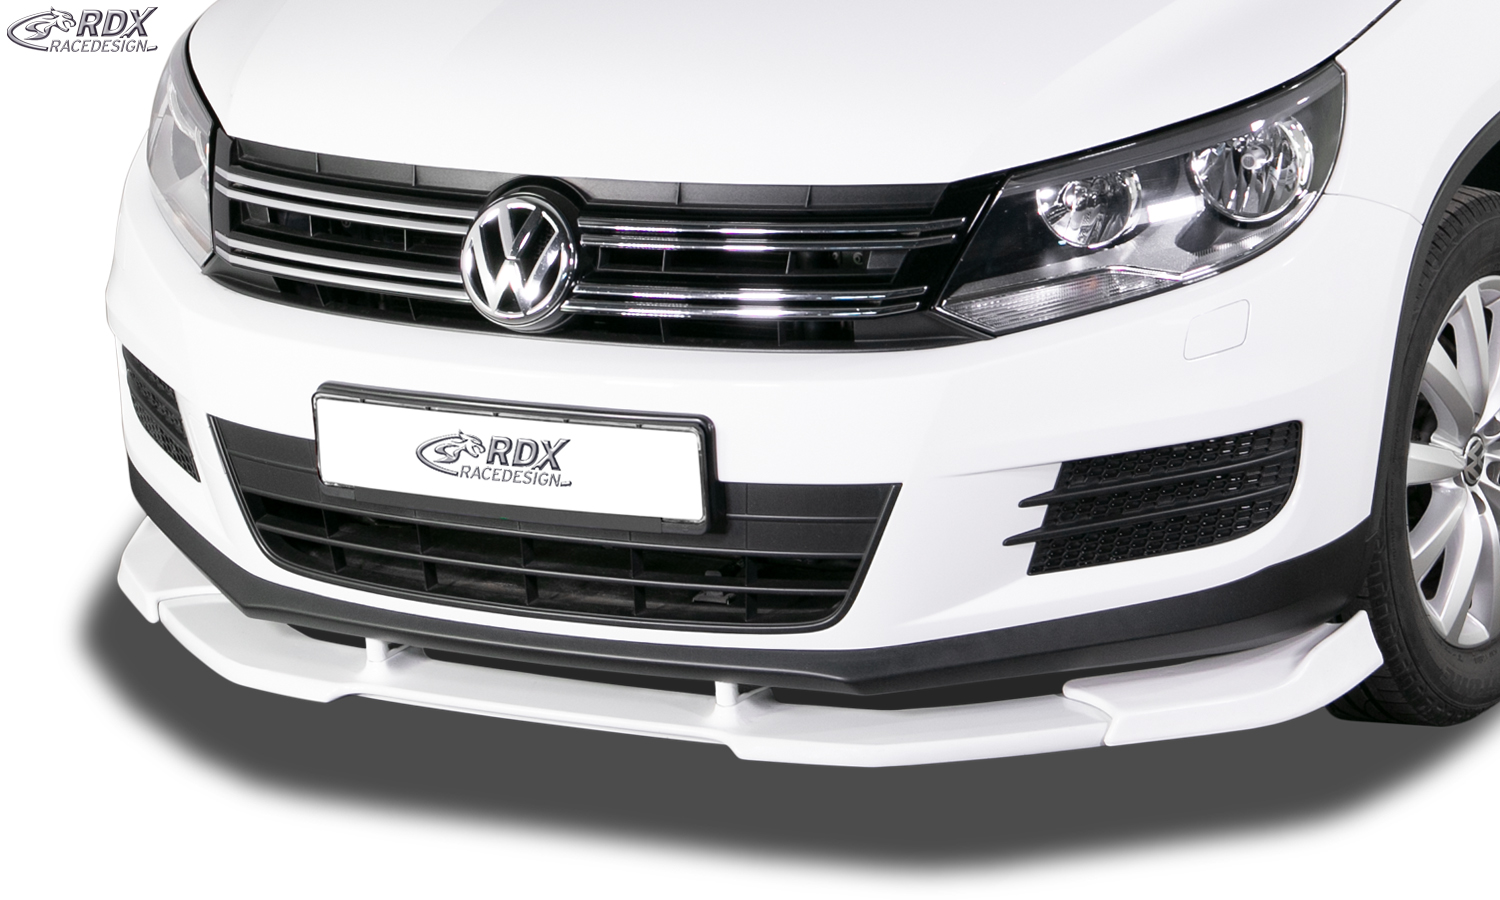 RDX Front Spoiler VARIO-X for VW Tiguan (2011-2016) Front Lip Splitter